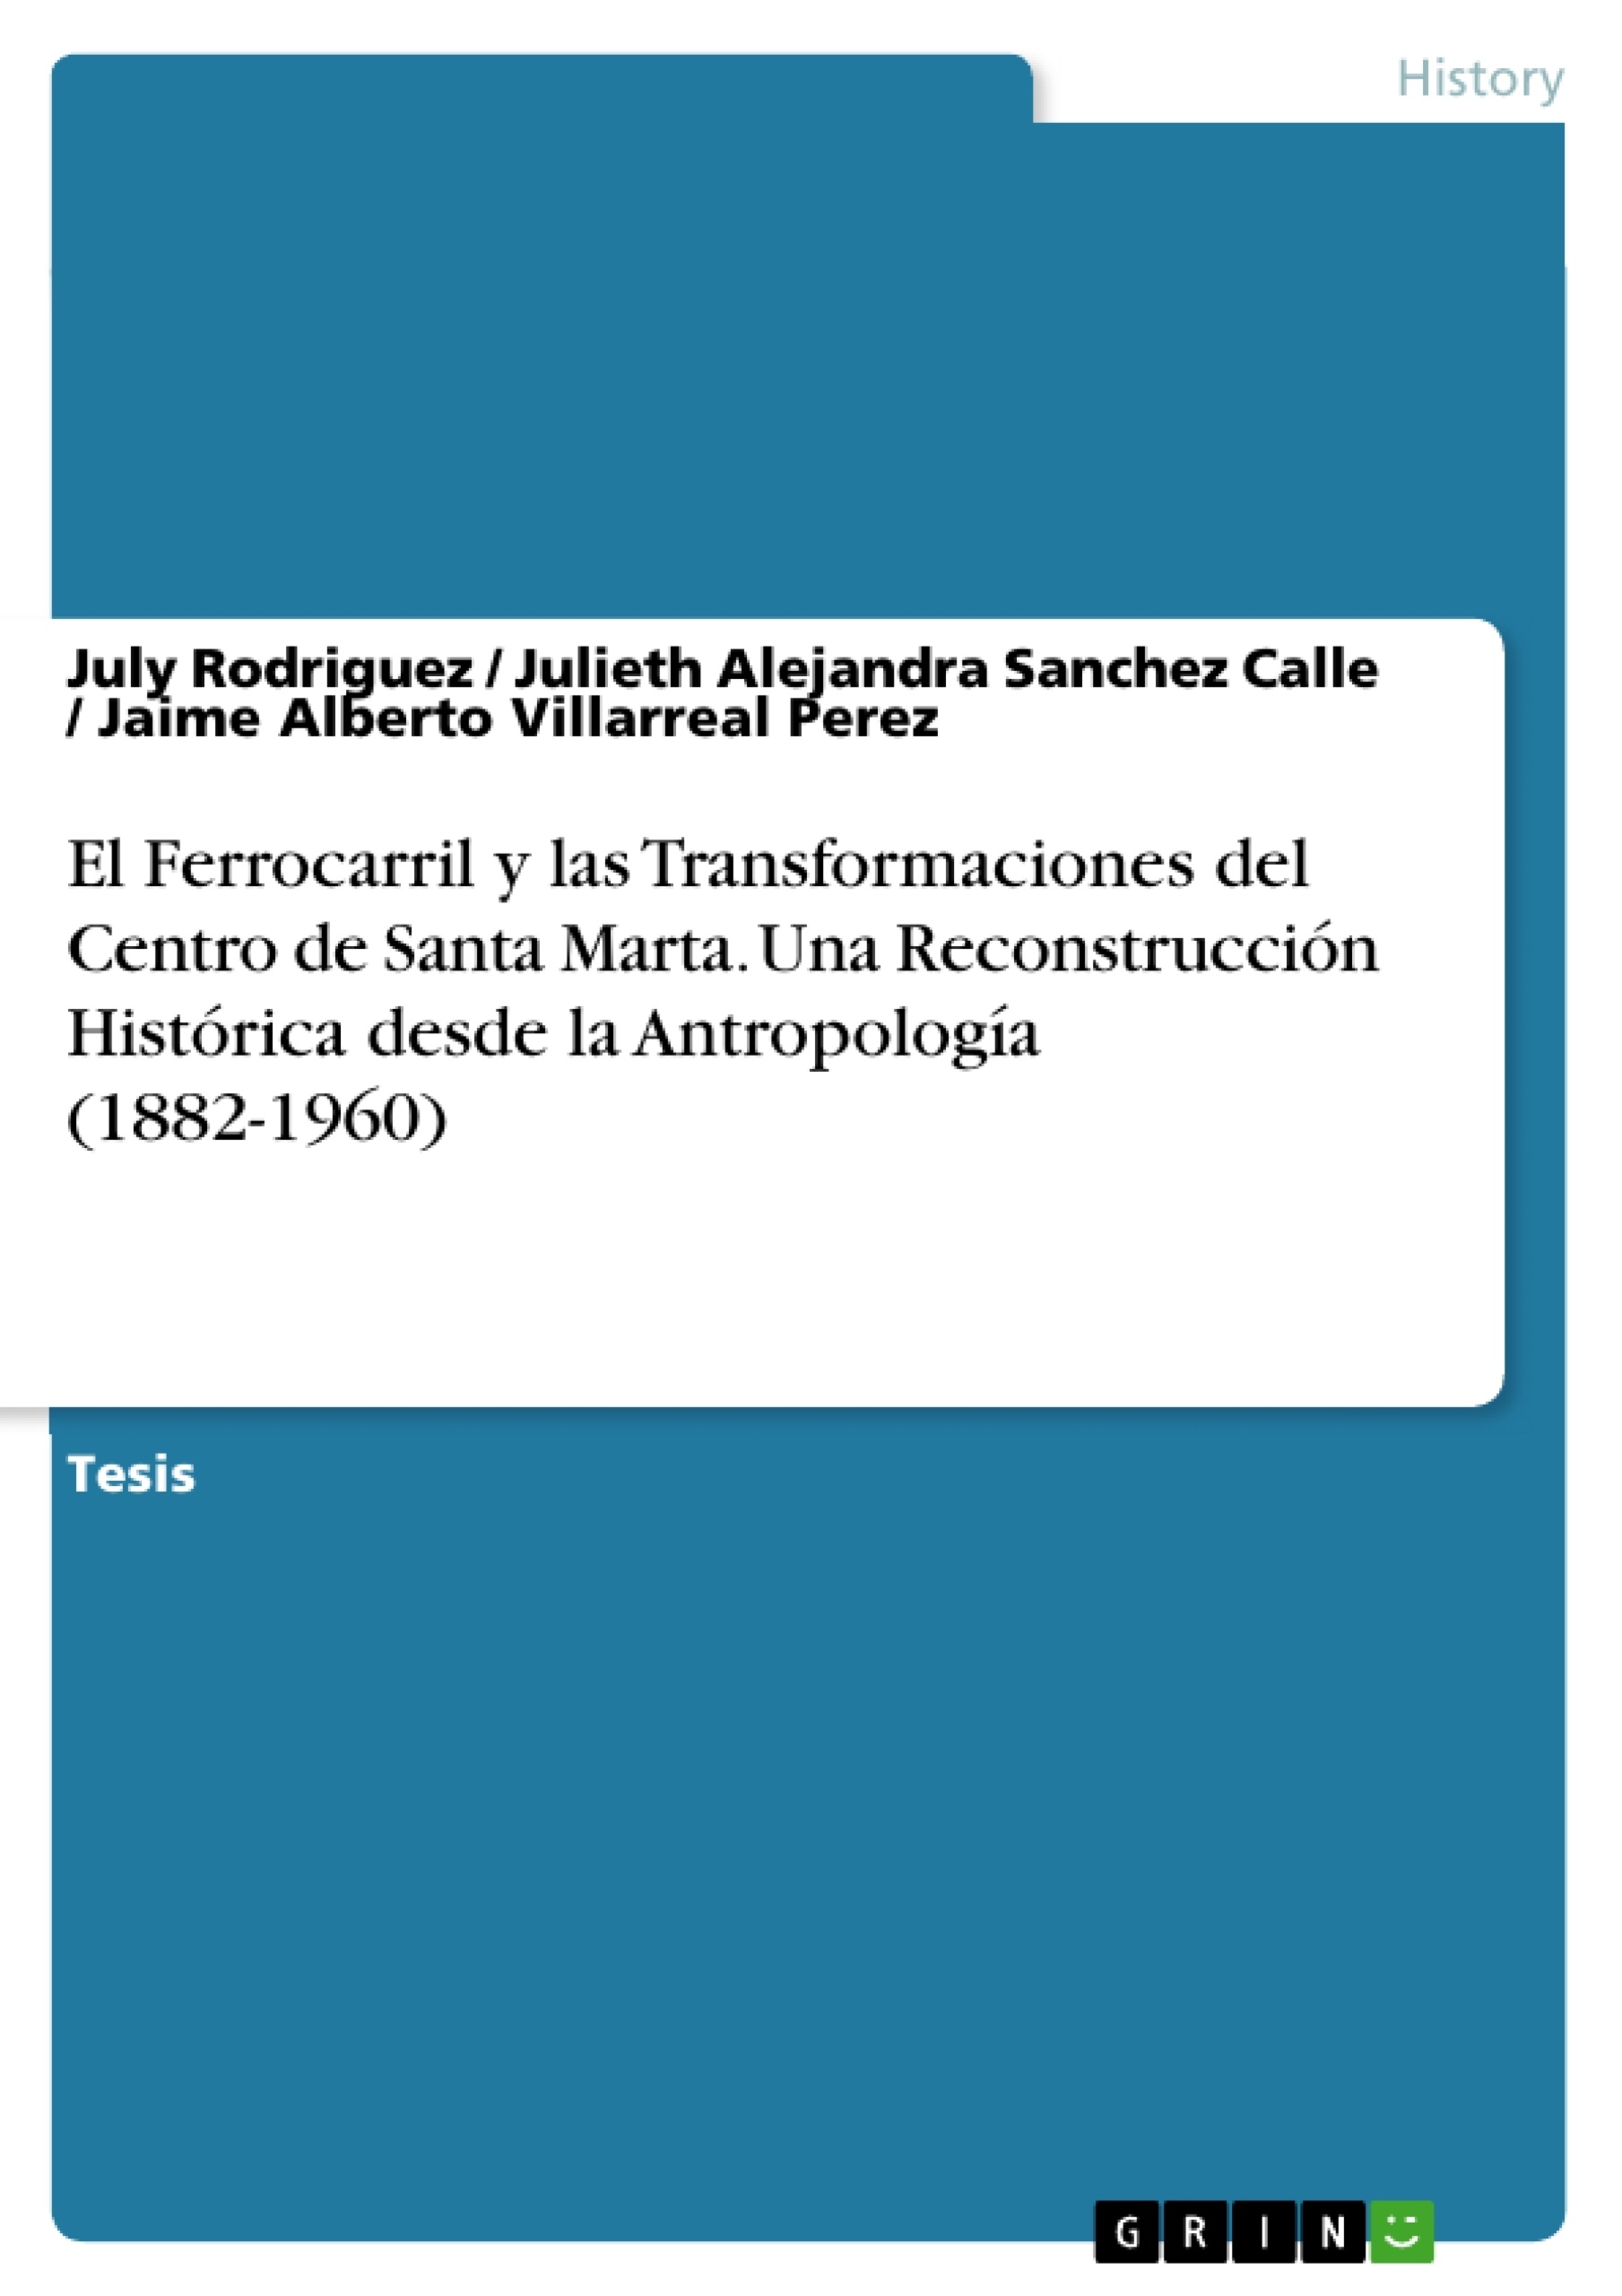 Titel: El Ferrocarril y las Transformaciones del Centro de Santa Marta. Una Reconstrucción Histórica desde la Antropología (1882-1960)